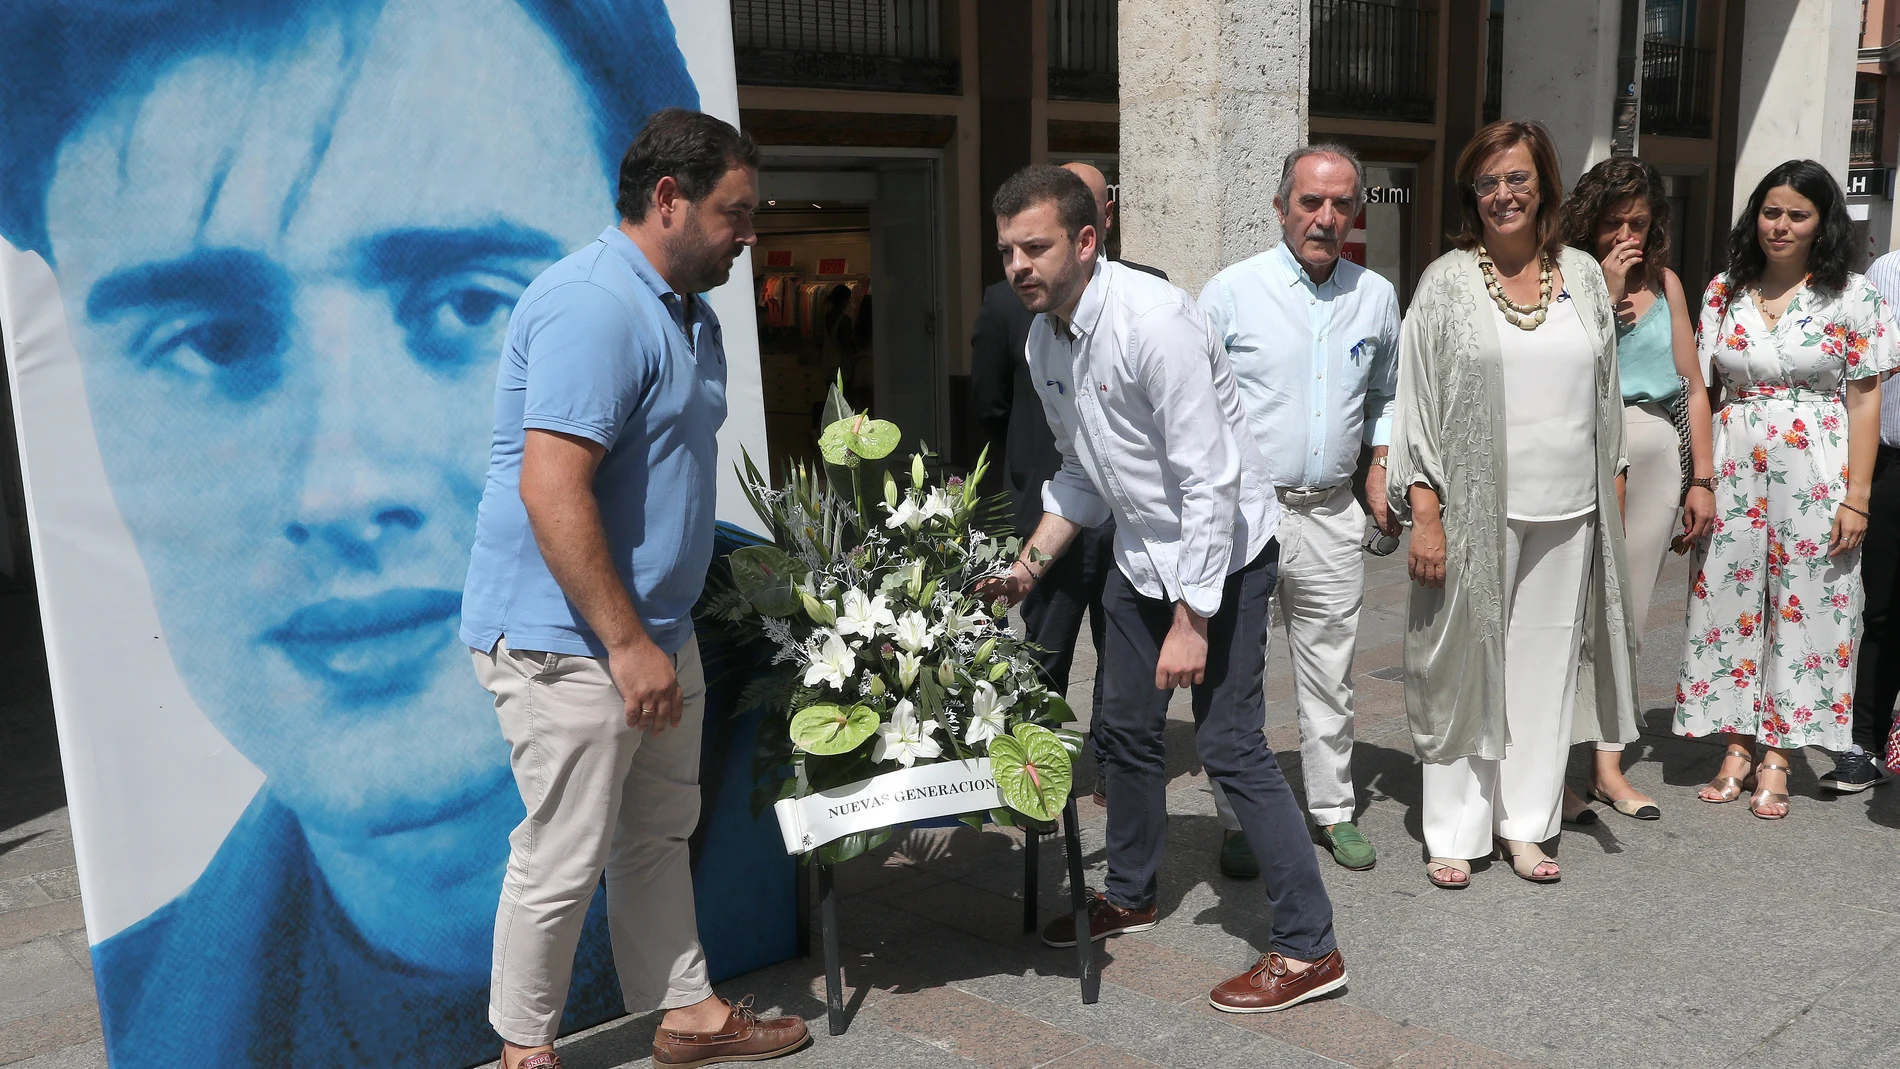 Lectura de manifiesto, minuto de silencio y ofrenda floral en memoria de Miguel Ángel Blanco organizado por las NN GG del PP de Palencia